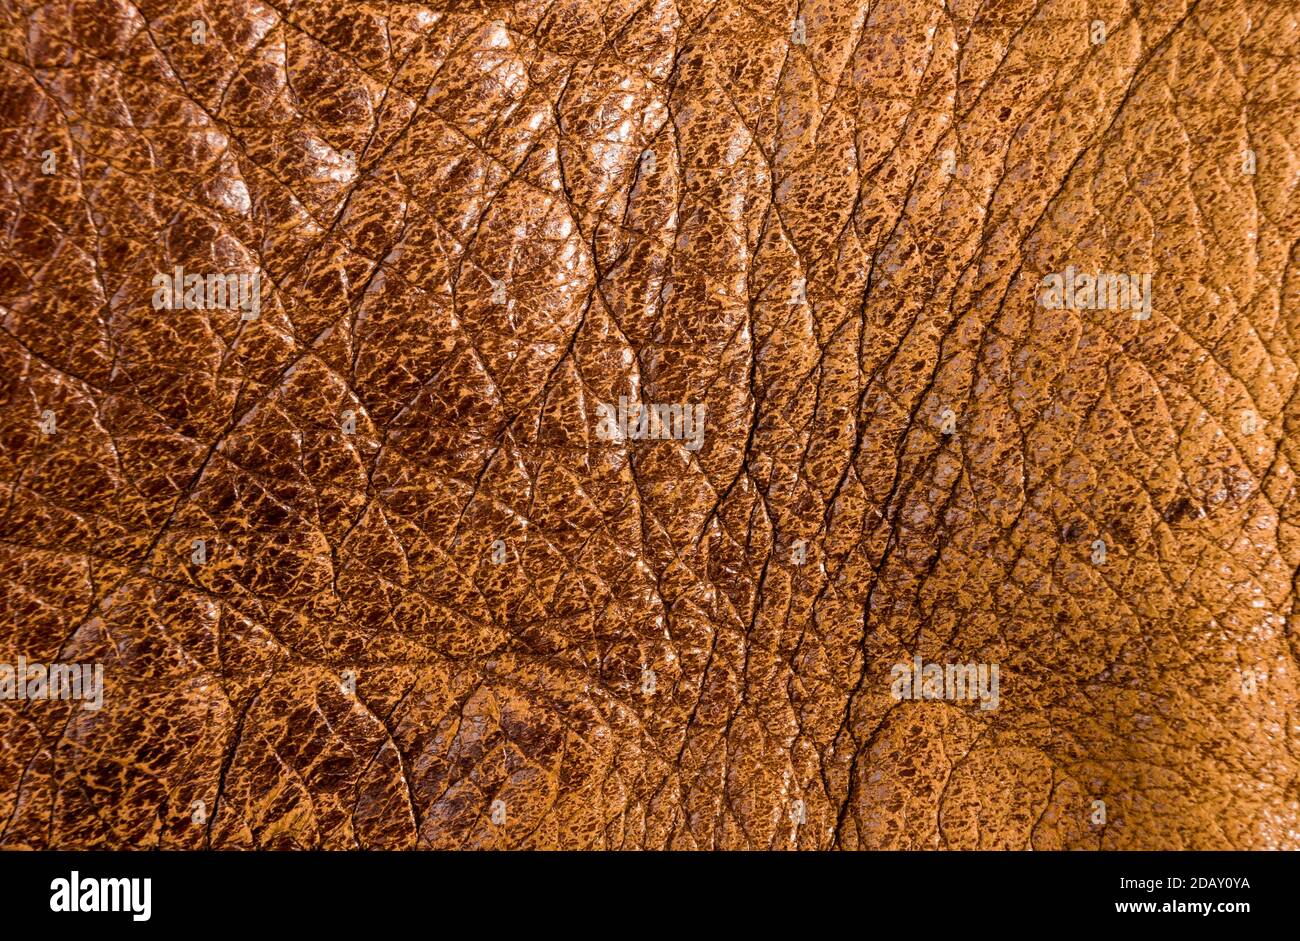 Old vintage genuino cuero marrón suave textura del fondo de la capa superior con poros y arañazos, macro Foto de stock